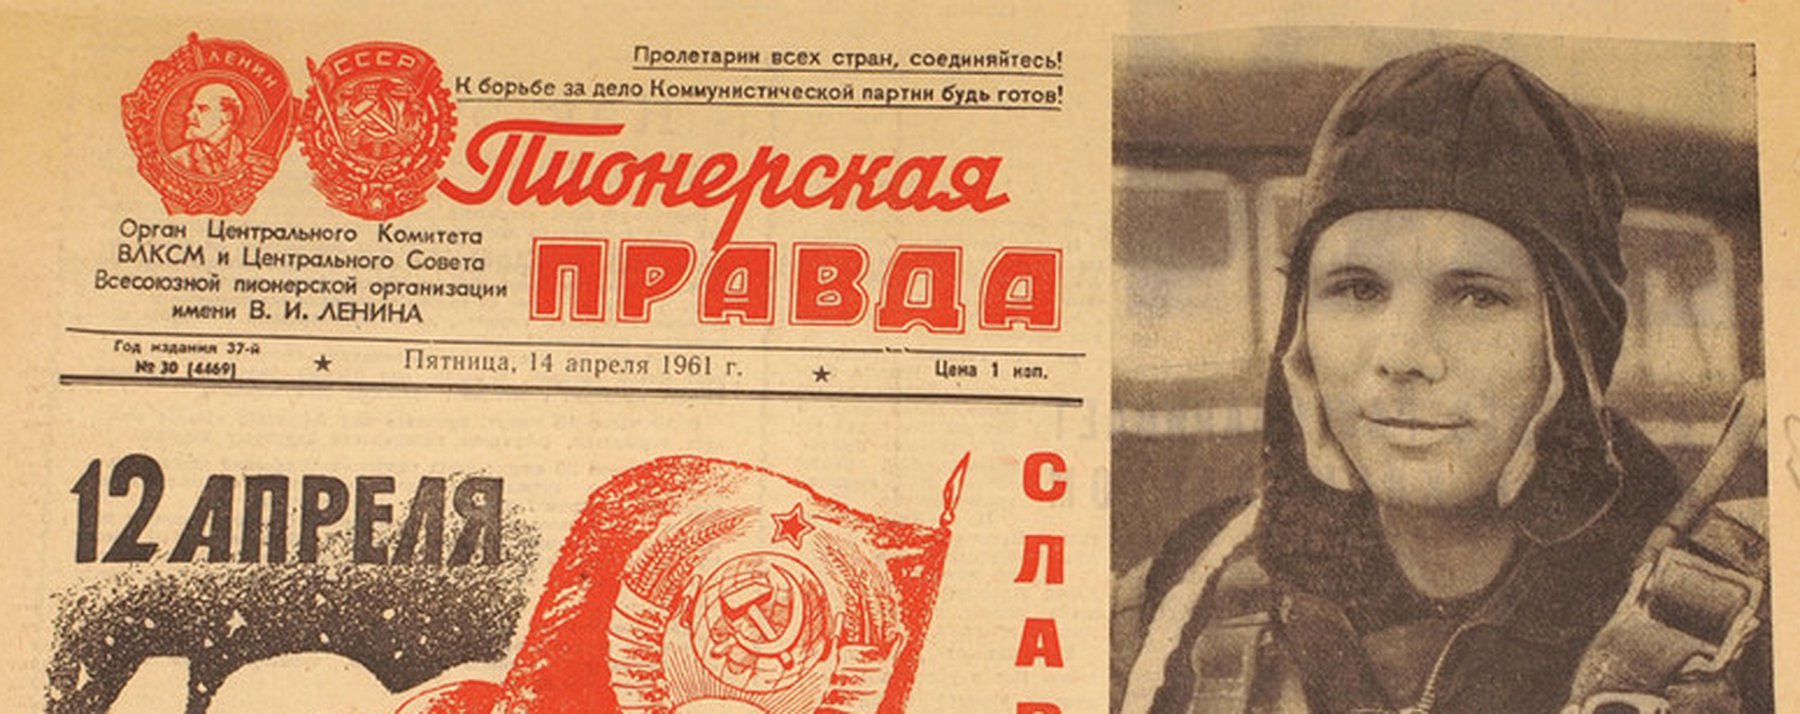 Наша страна 12 апреля 1961. Советская Пионерская правда. Первый выпуск газеты Пионерская правда. Пионерская правда газета.